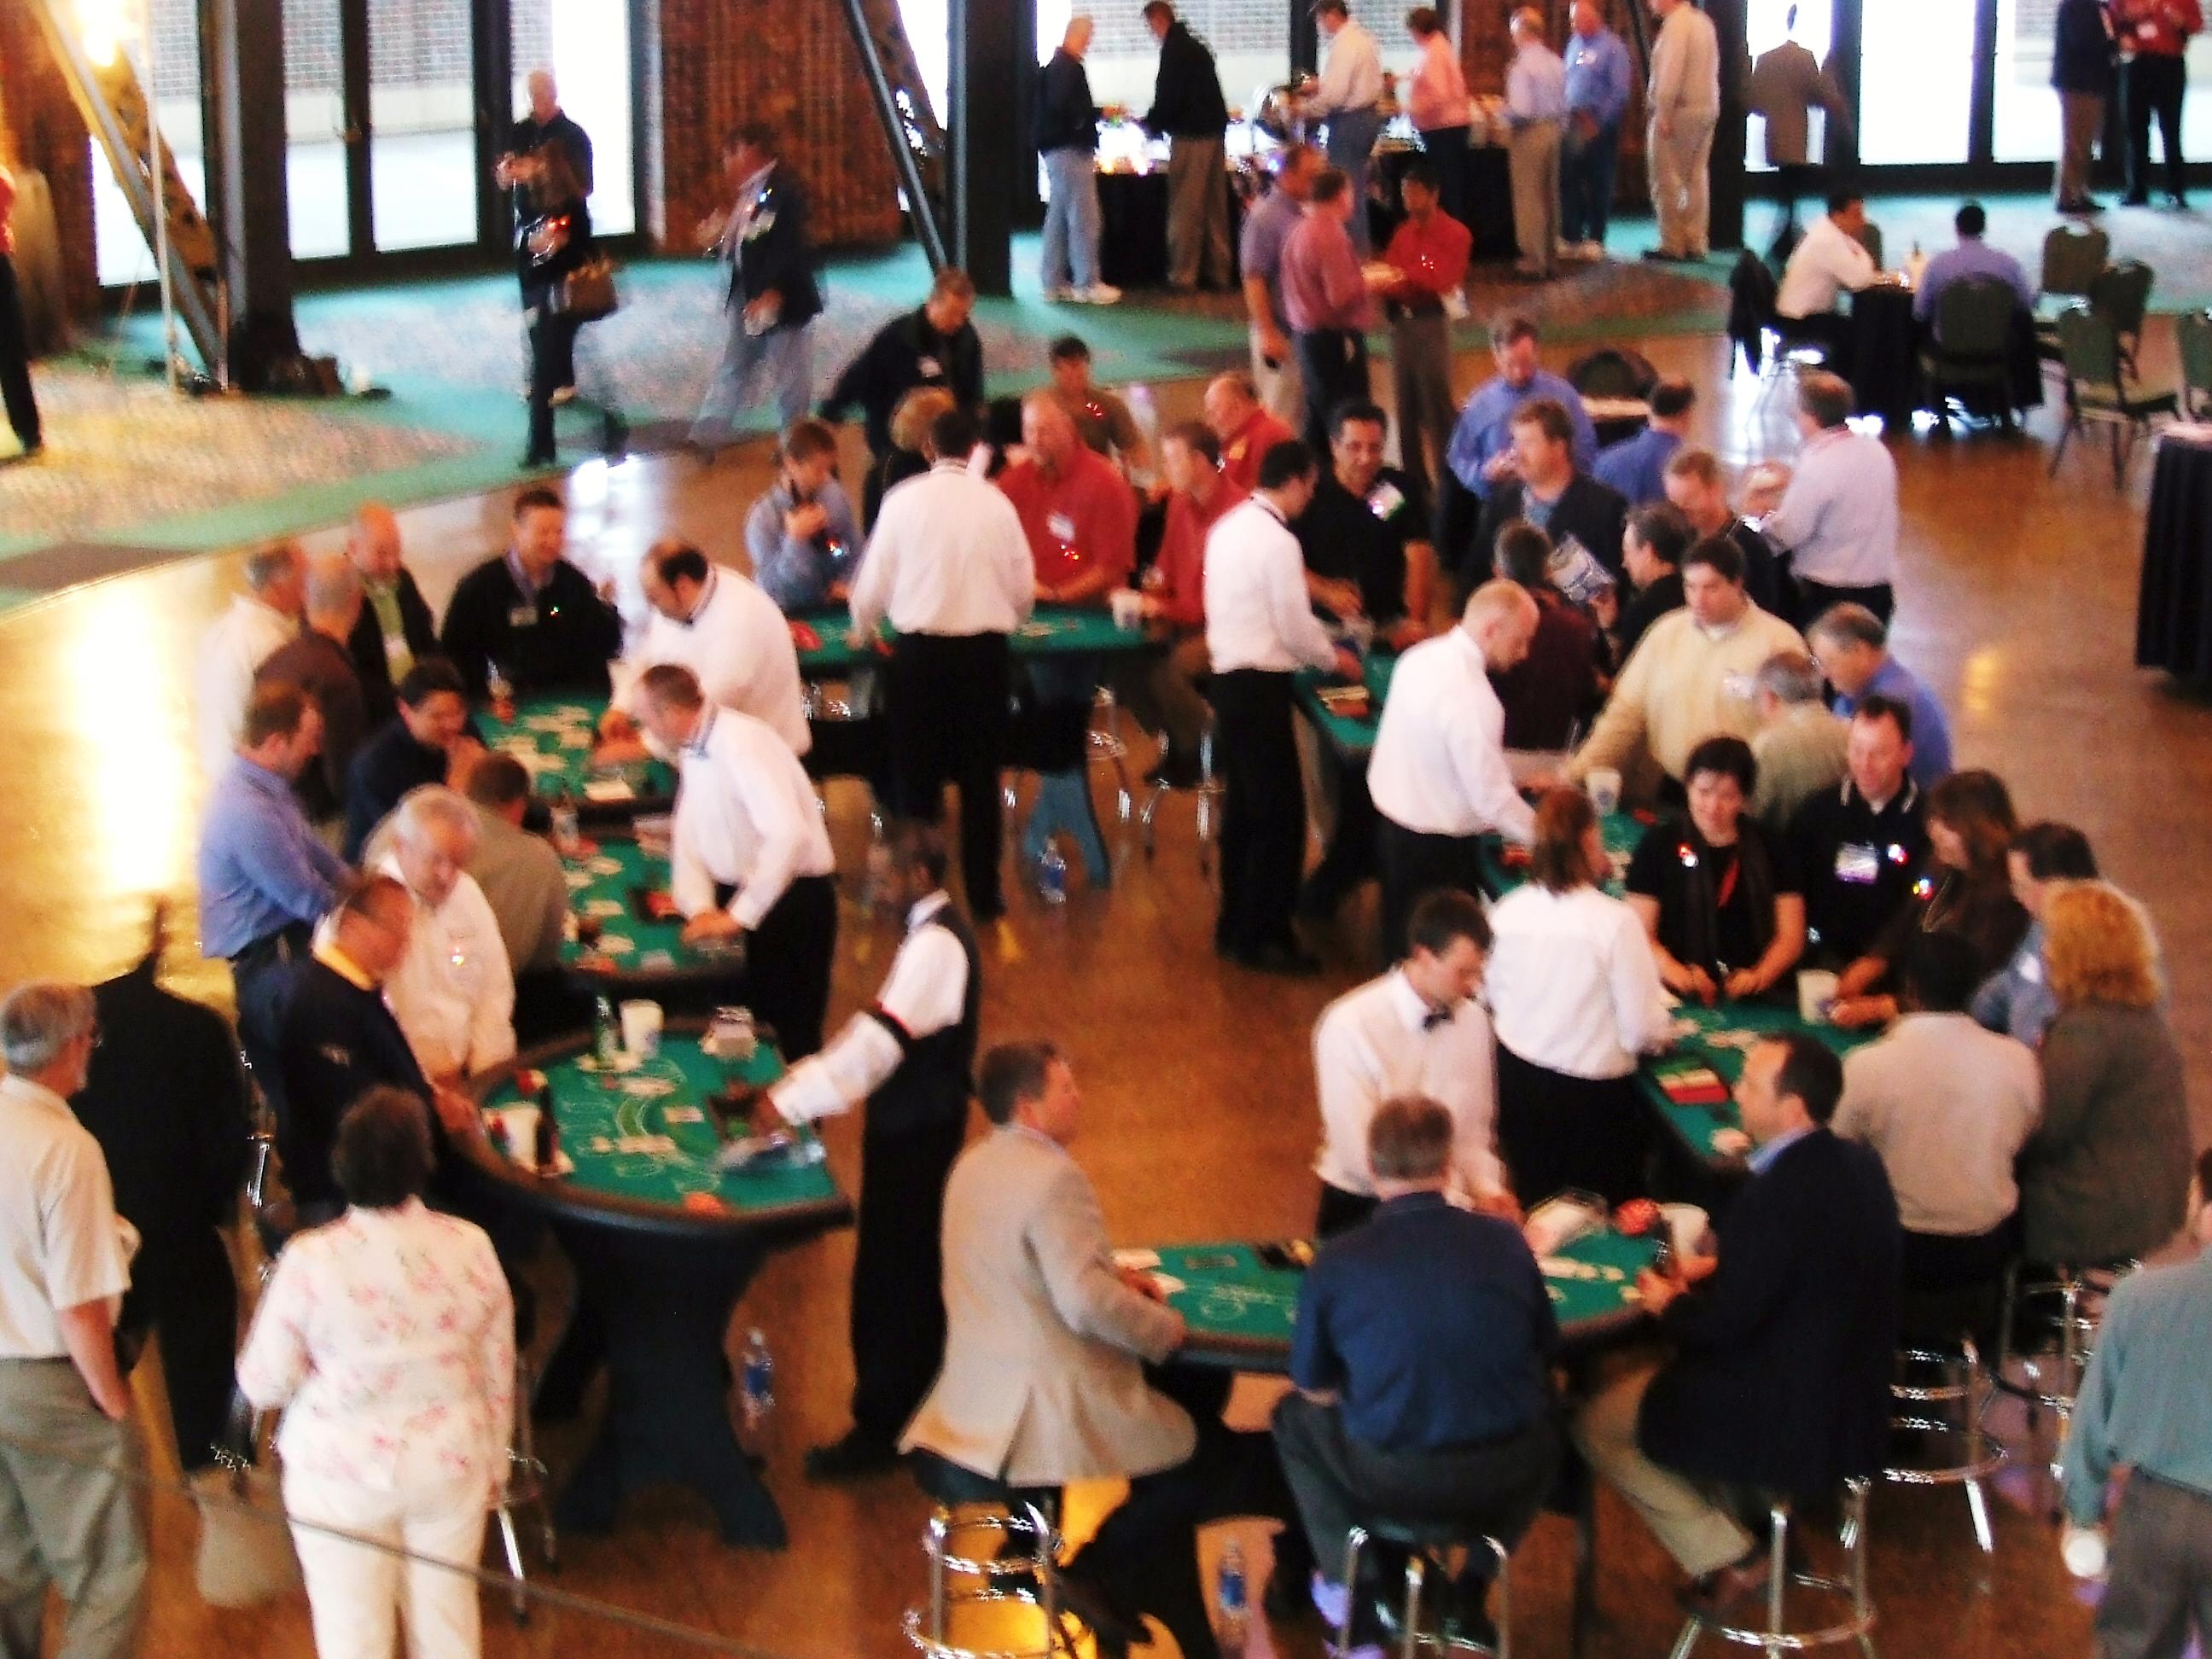 Iowa Casino & Poker Rentals Photo